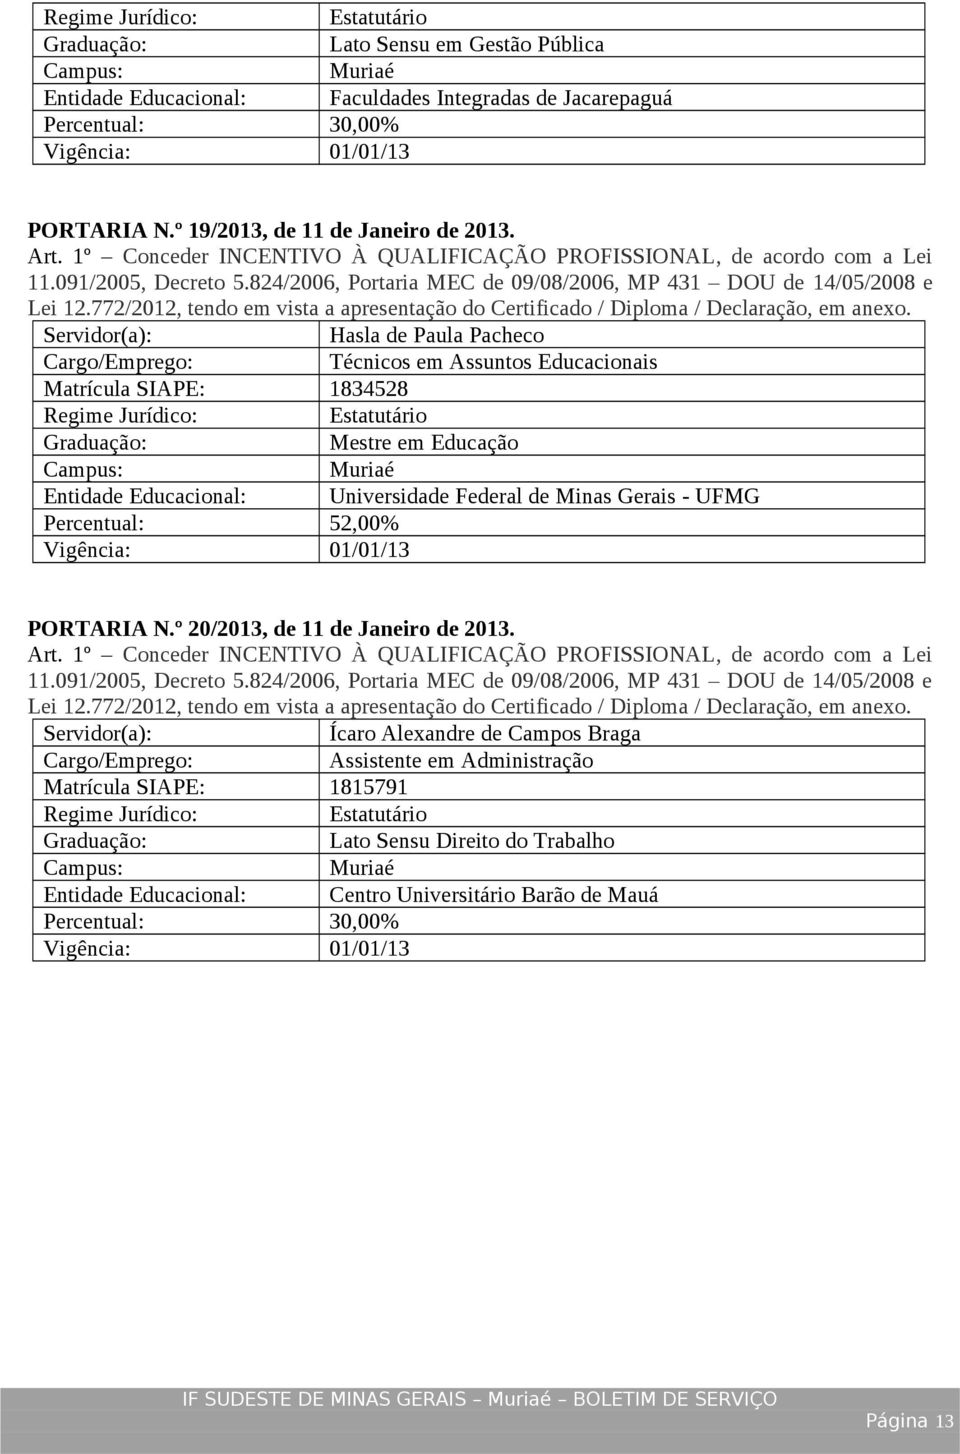 Minas Gerais - UFMG Percentual: 52,00% PORTARIA N.º 20/2013, de 11 de Janeiro de 2013.